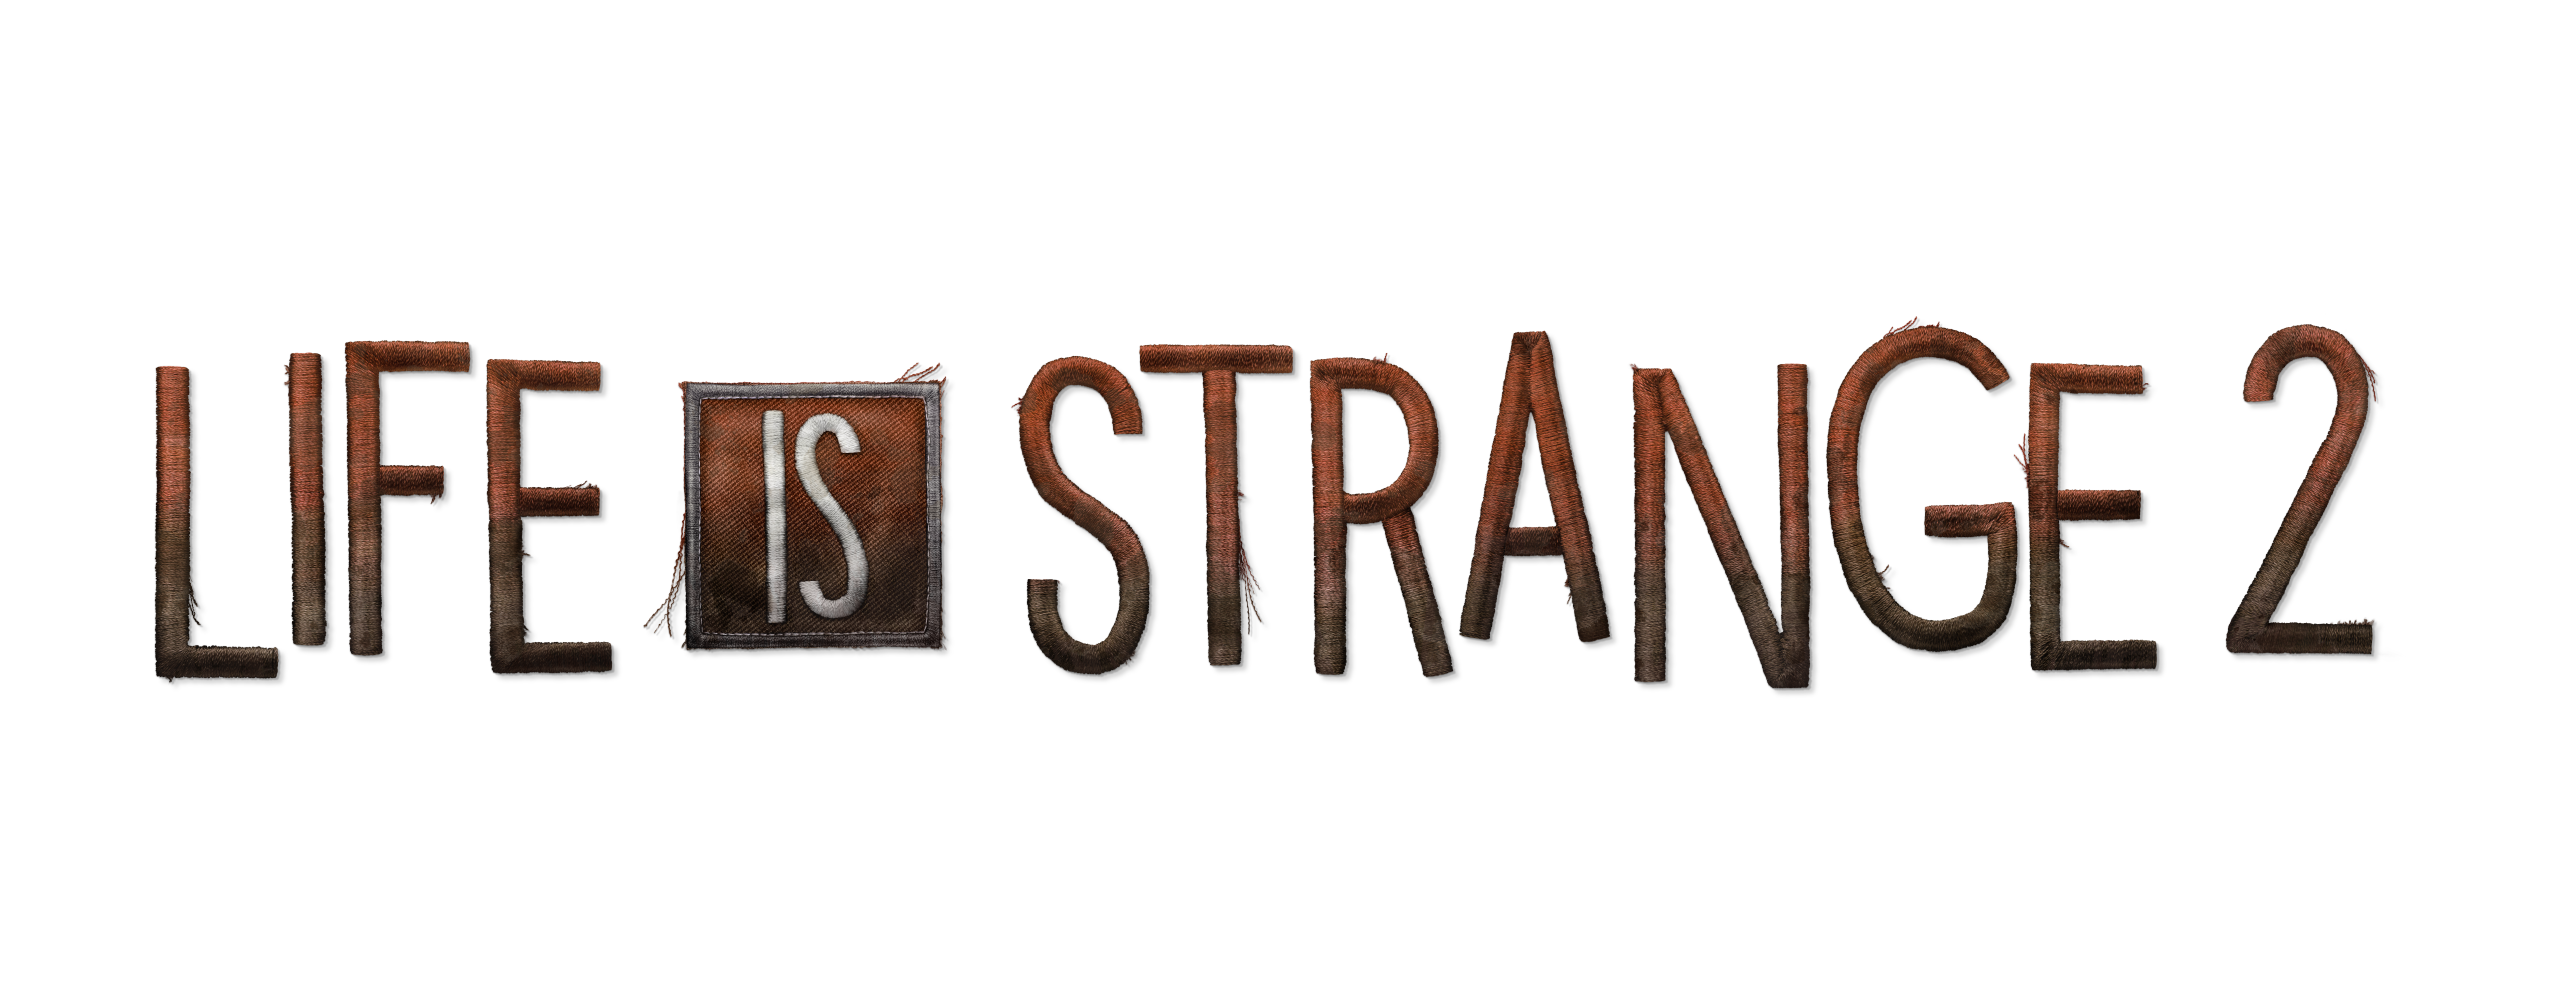 Life is 2 1. Life is Strange 2 лого. Life is Strange 2 название. Life is Strange 2 надпись. Life is Strange 2 эпизод 1 лого.